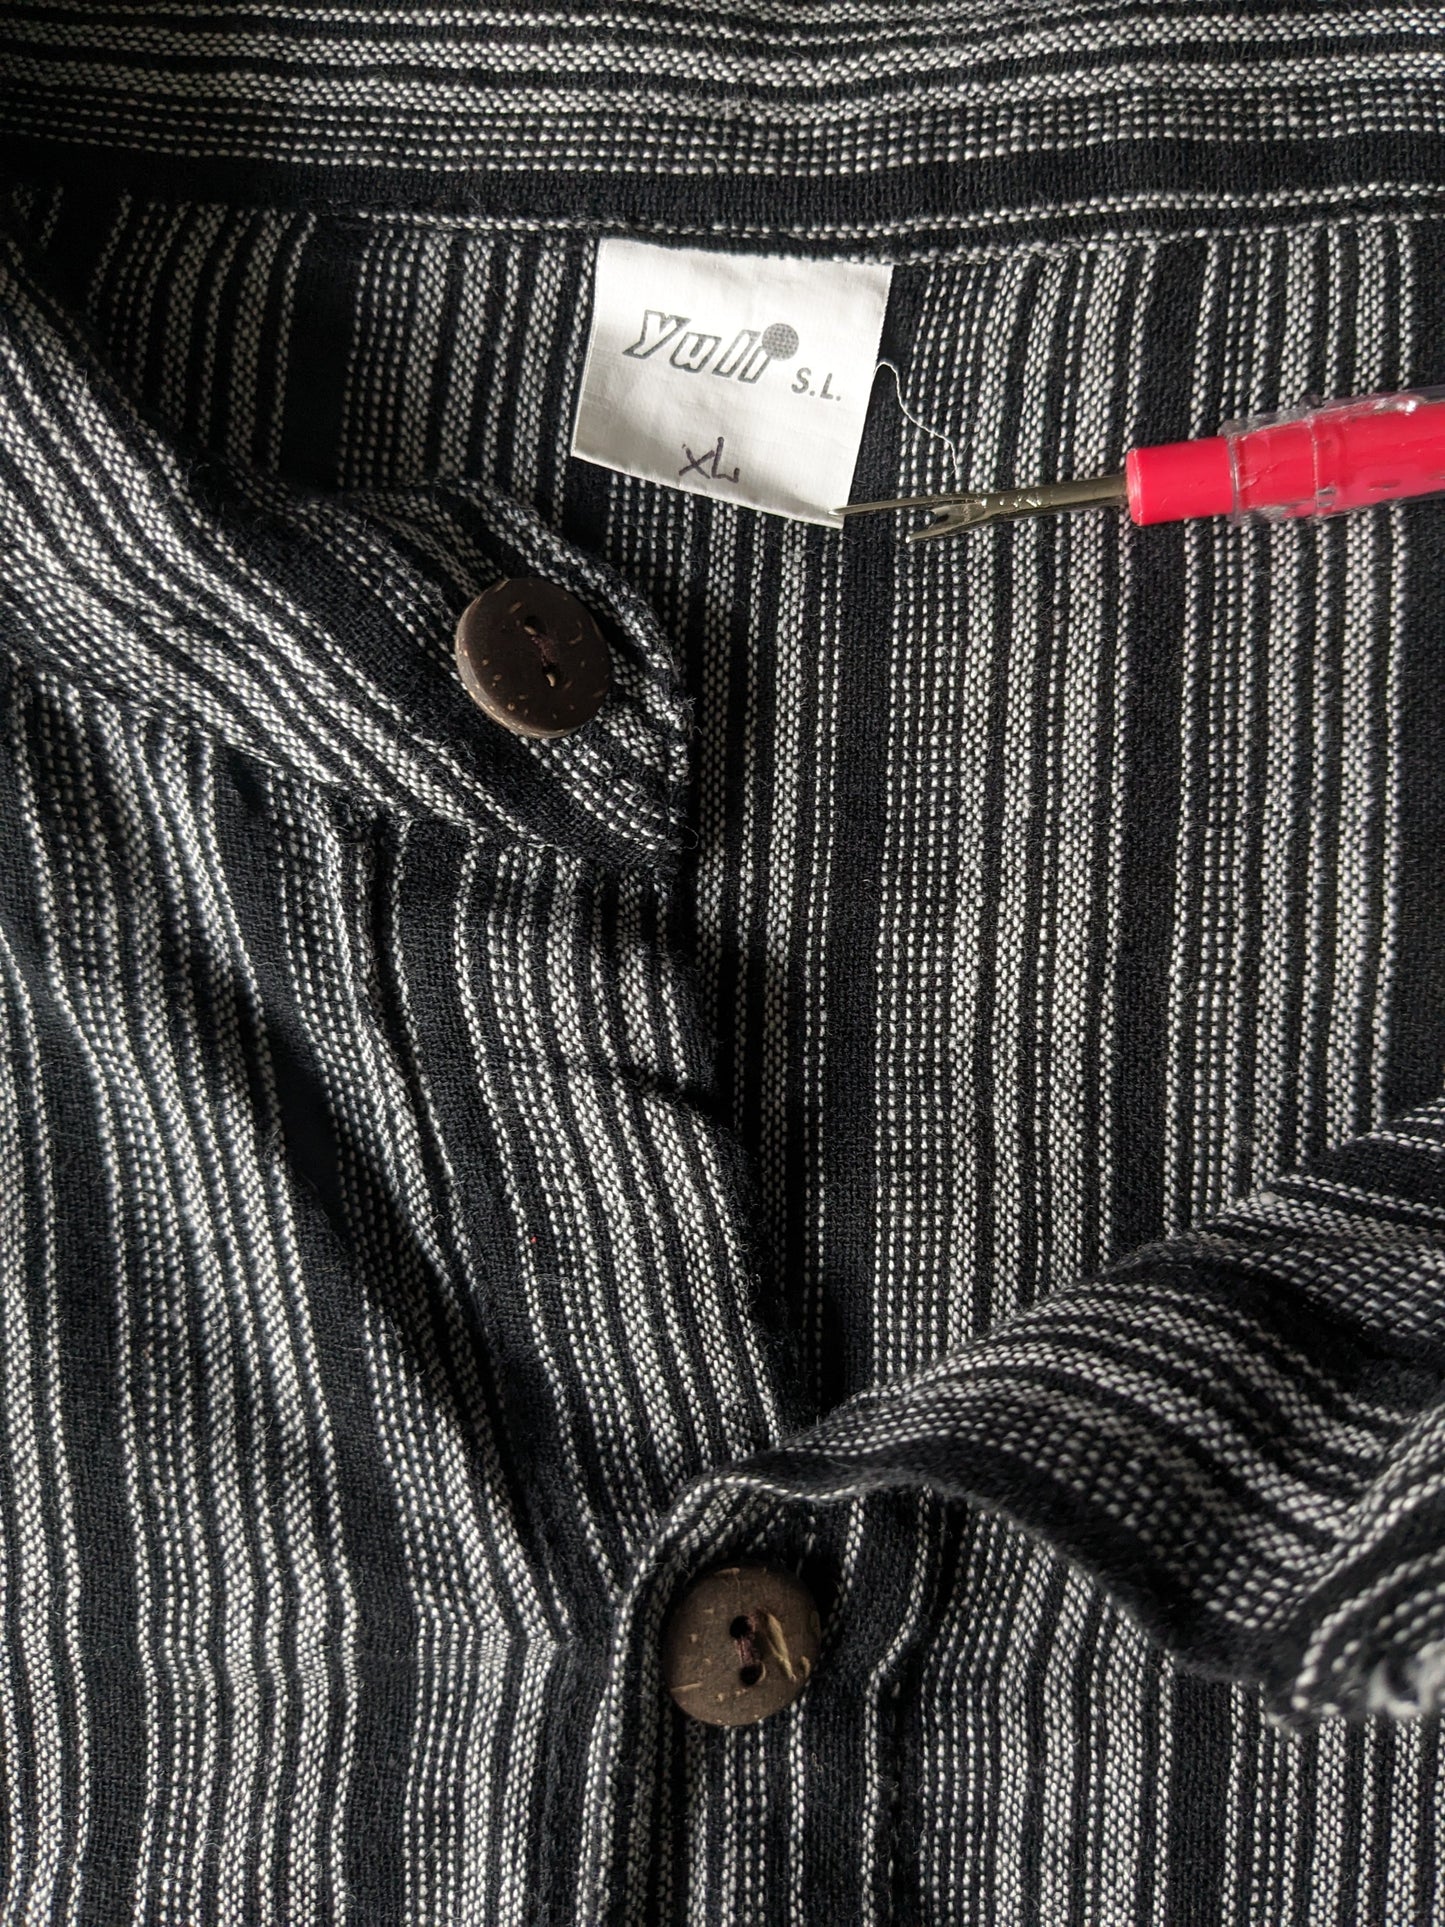 Vintage Yuli polo trui / overhemd met opstaande / farmers / Mao kraag. Zwart grijs gestreept met zak. Maat XL.